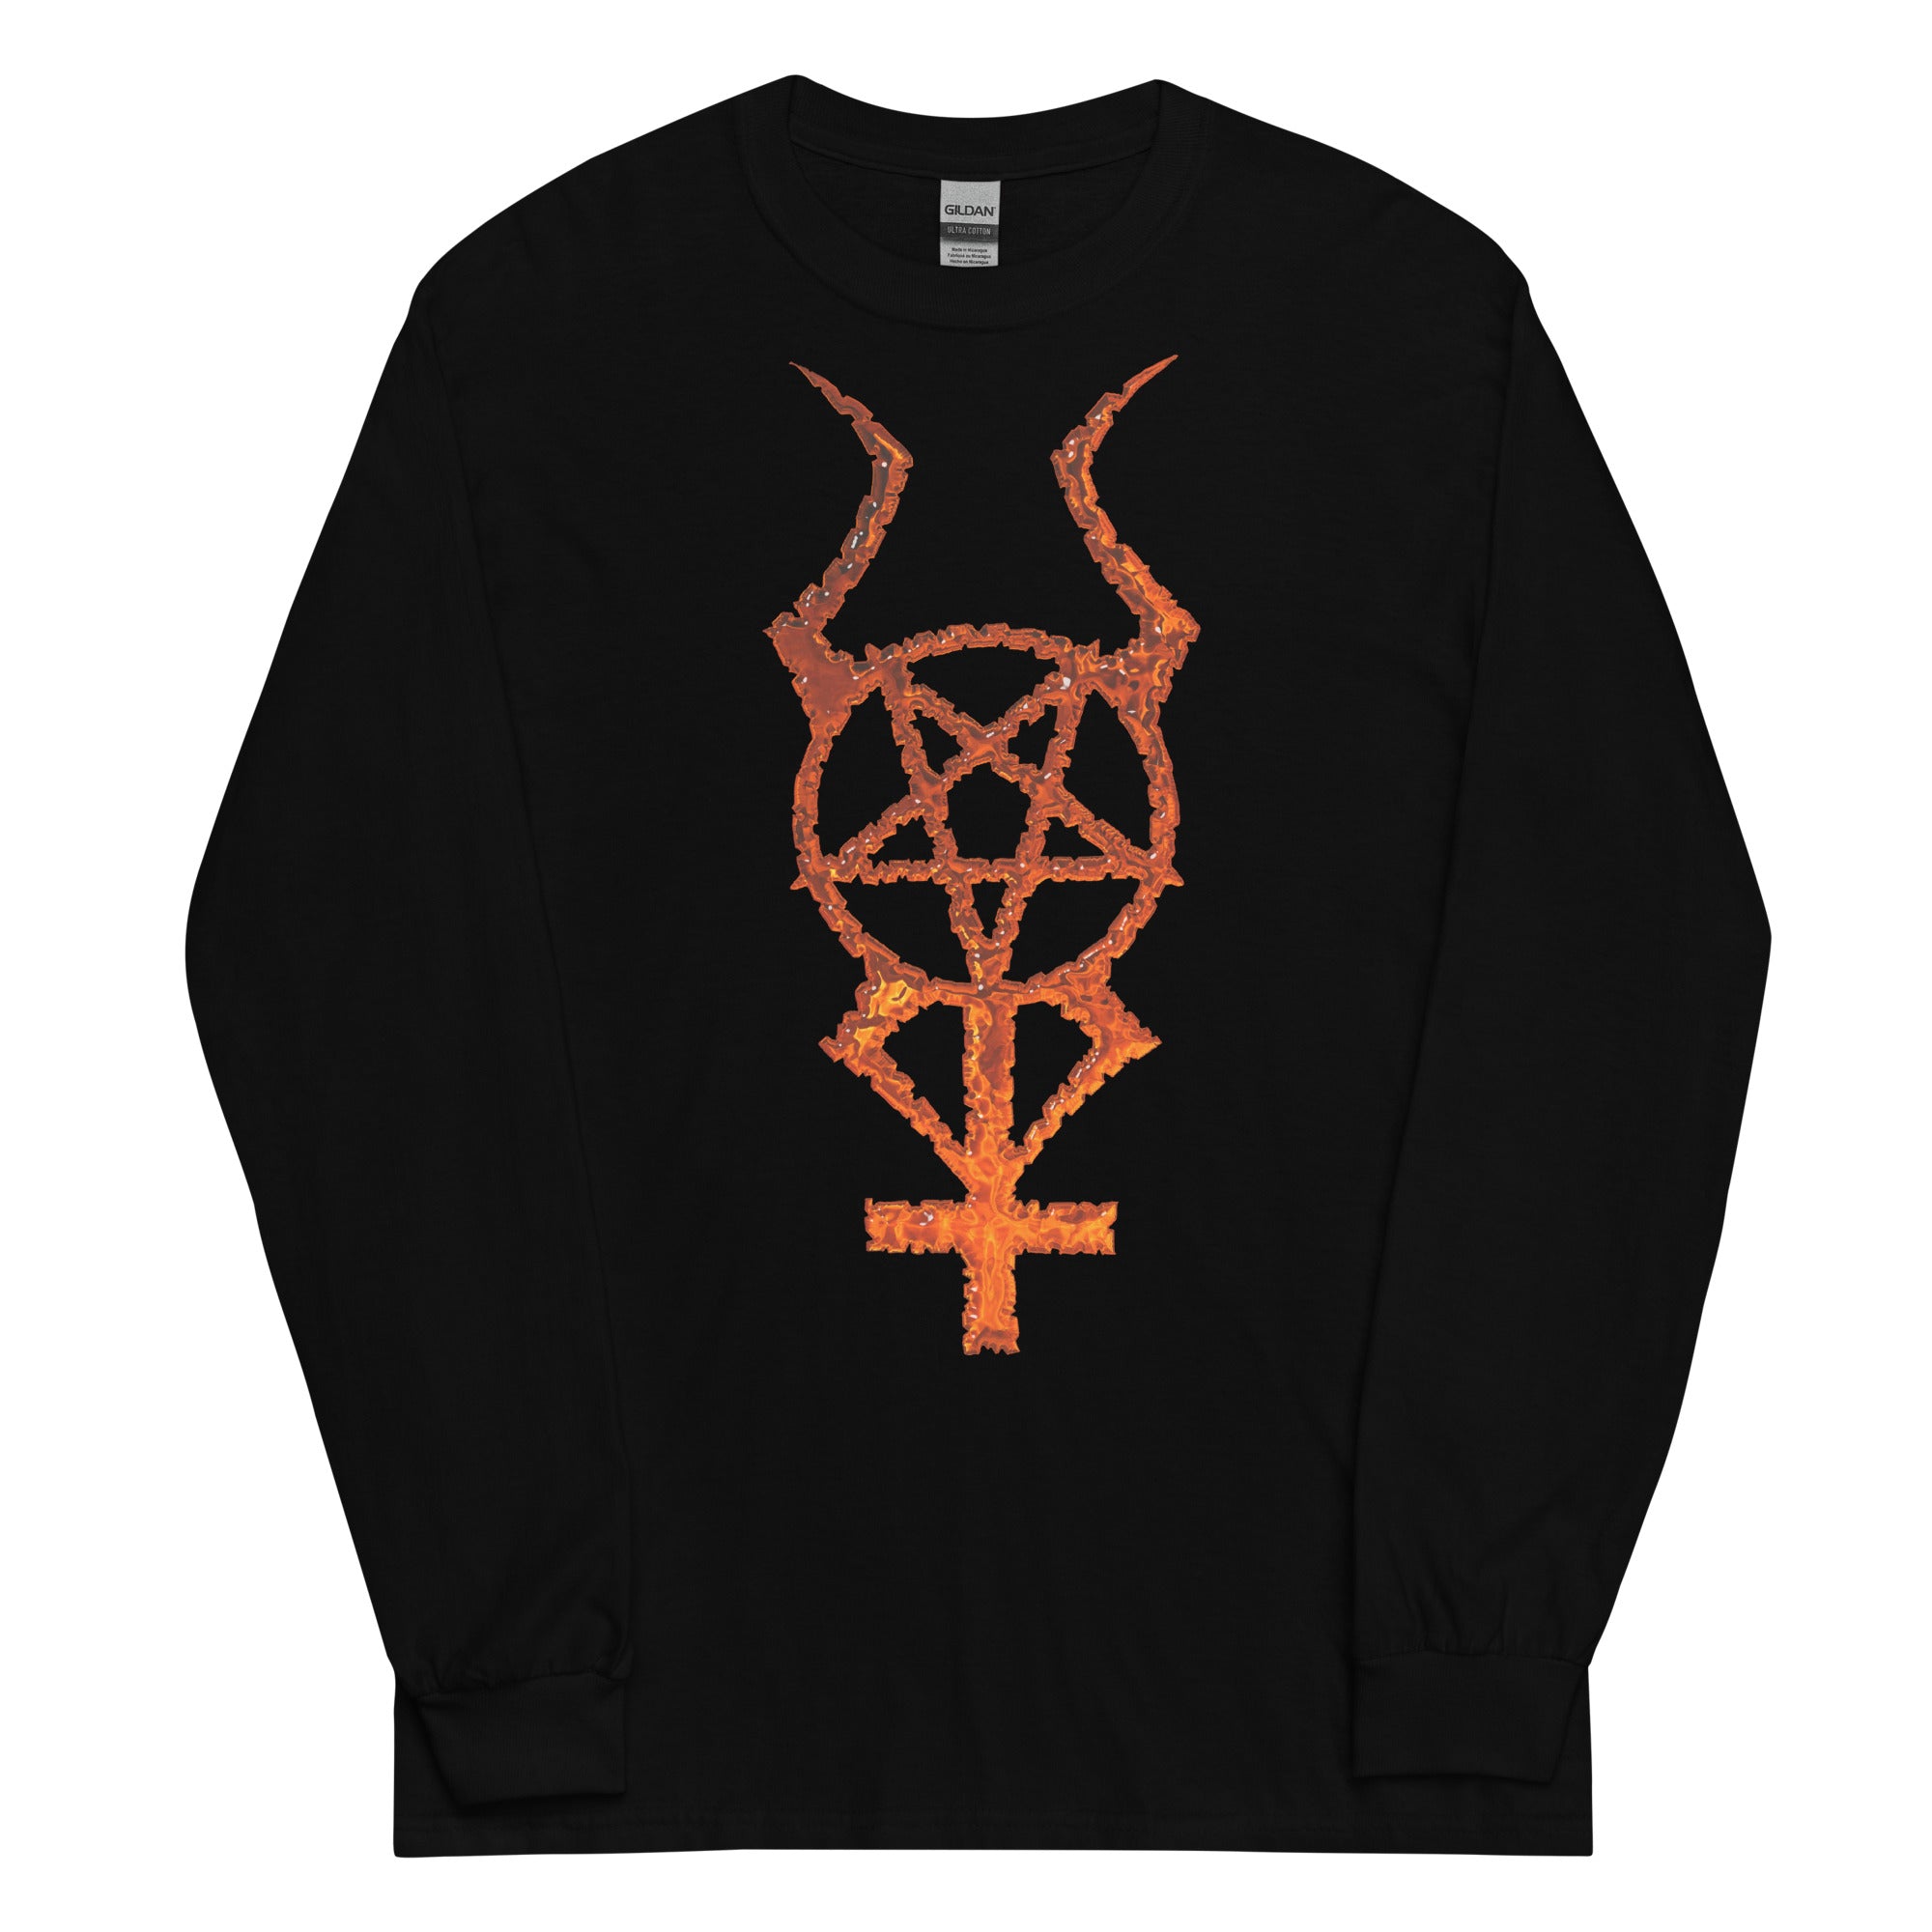 Flame Horned Pentacross Pentagram Cross Long Sleeve Shirt - Edge of Life Designs